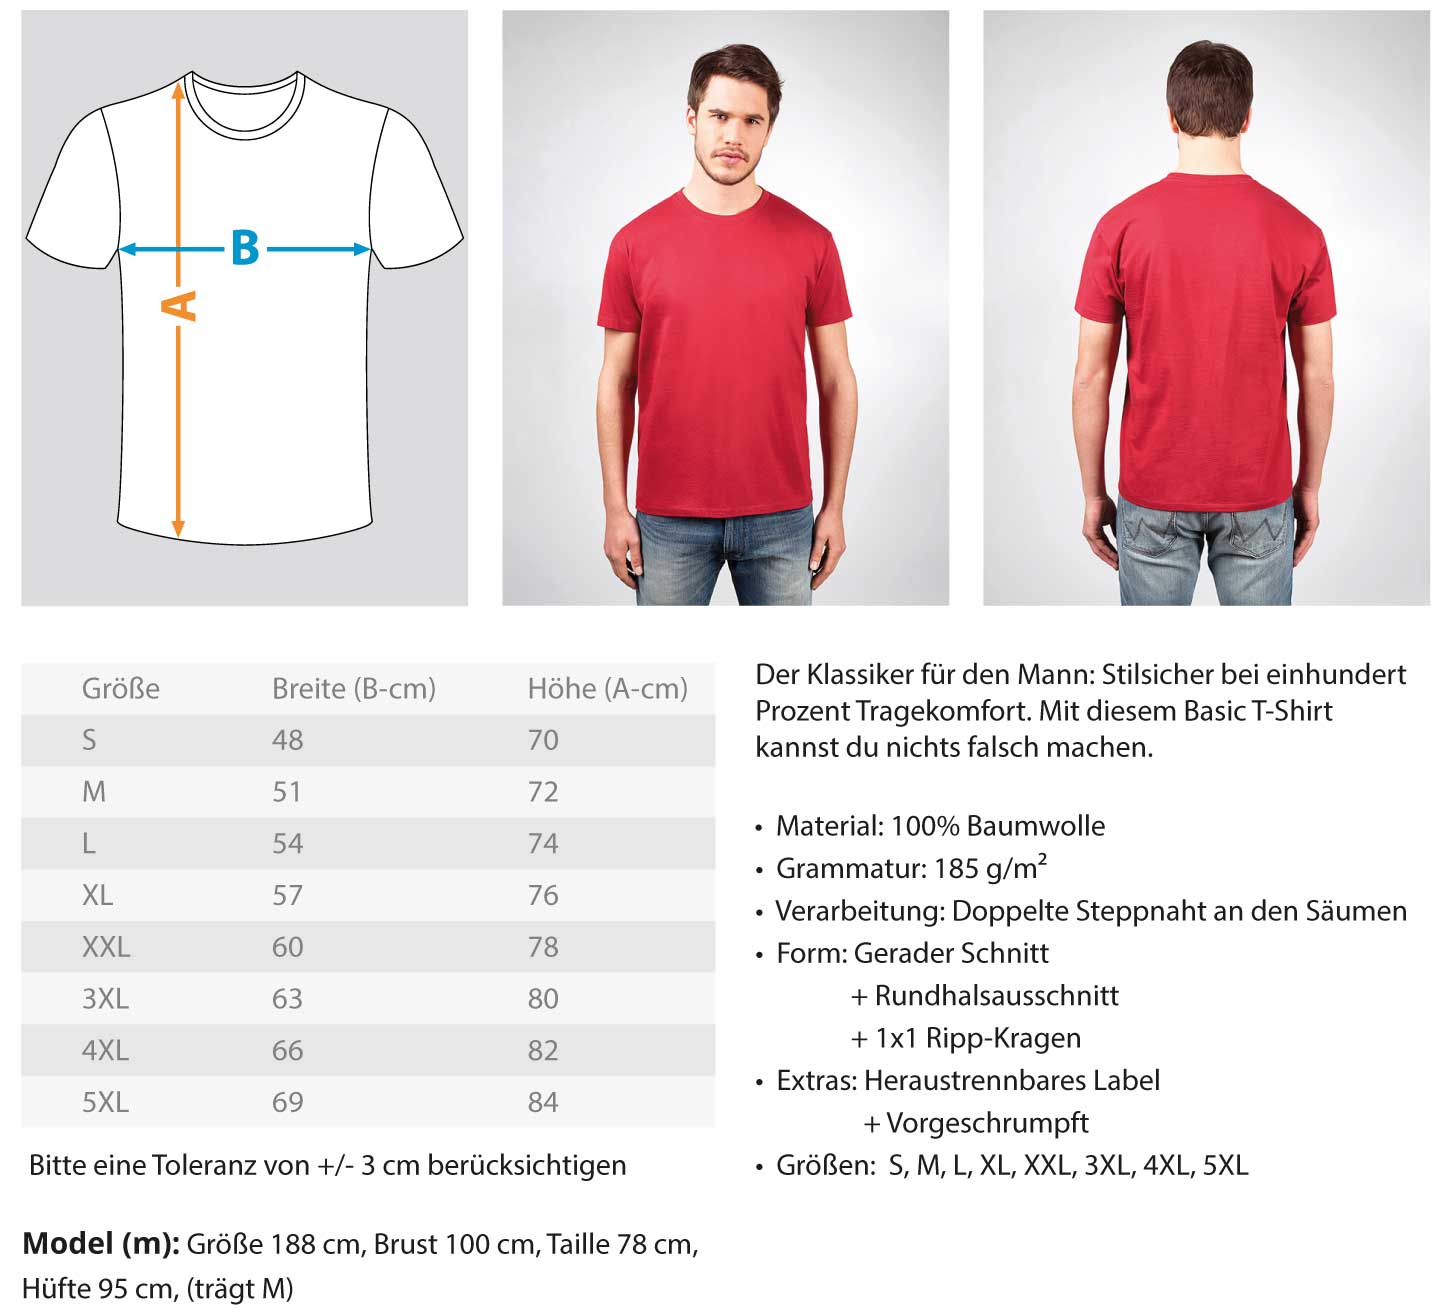 Gerüstbauer T-Shirt BRIGADE GERMANY €29.95 Gerüstbauer - Shop >>